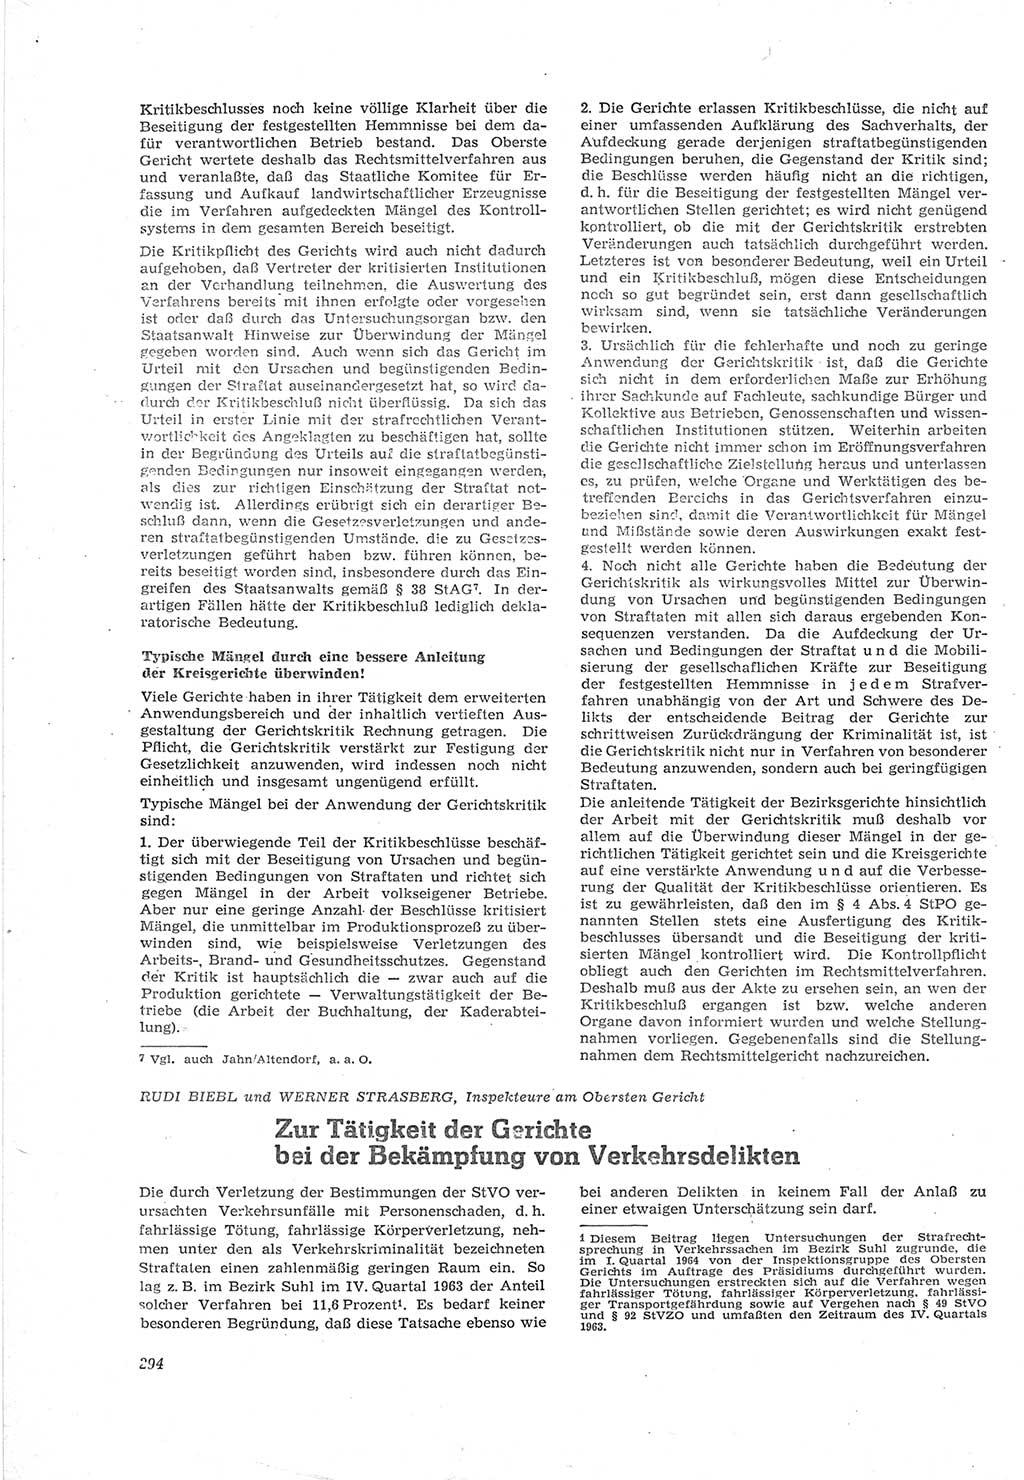 Neue Justiz (NJ), Zeitschrift für Recht und Rechtswissenschaft [Deutsche Demokratische Republik (DDR)], 18. Jahrgang 1964, Seite 294 (NJ DDR 1964, S. 294)